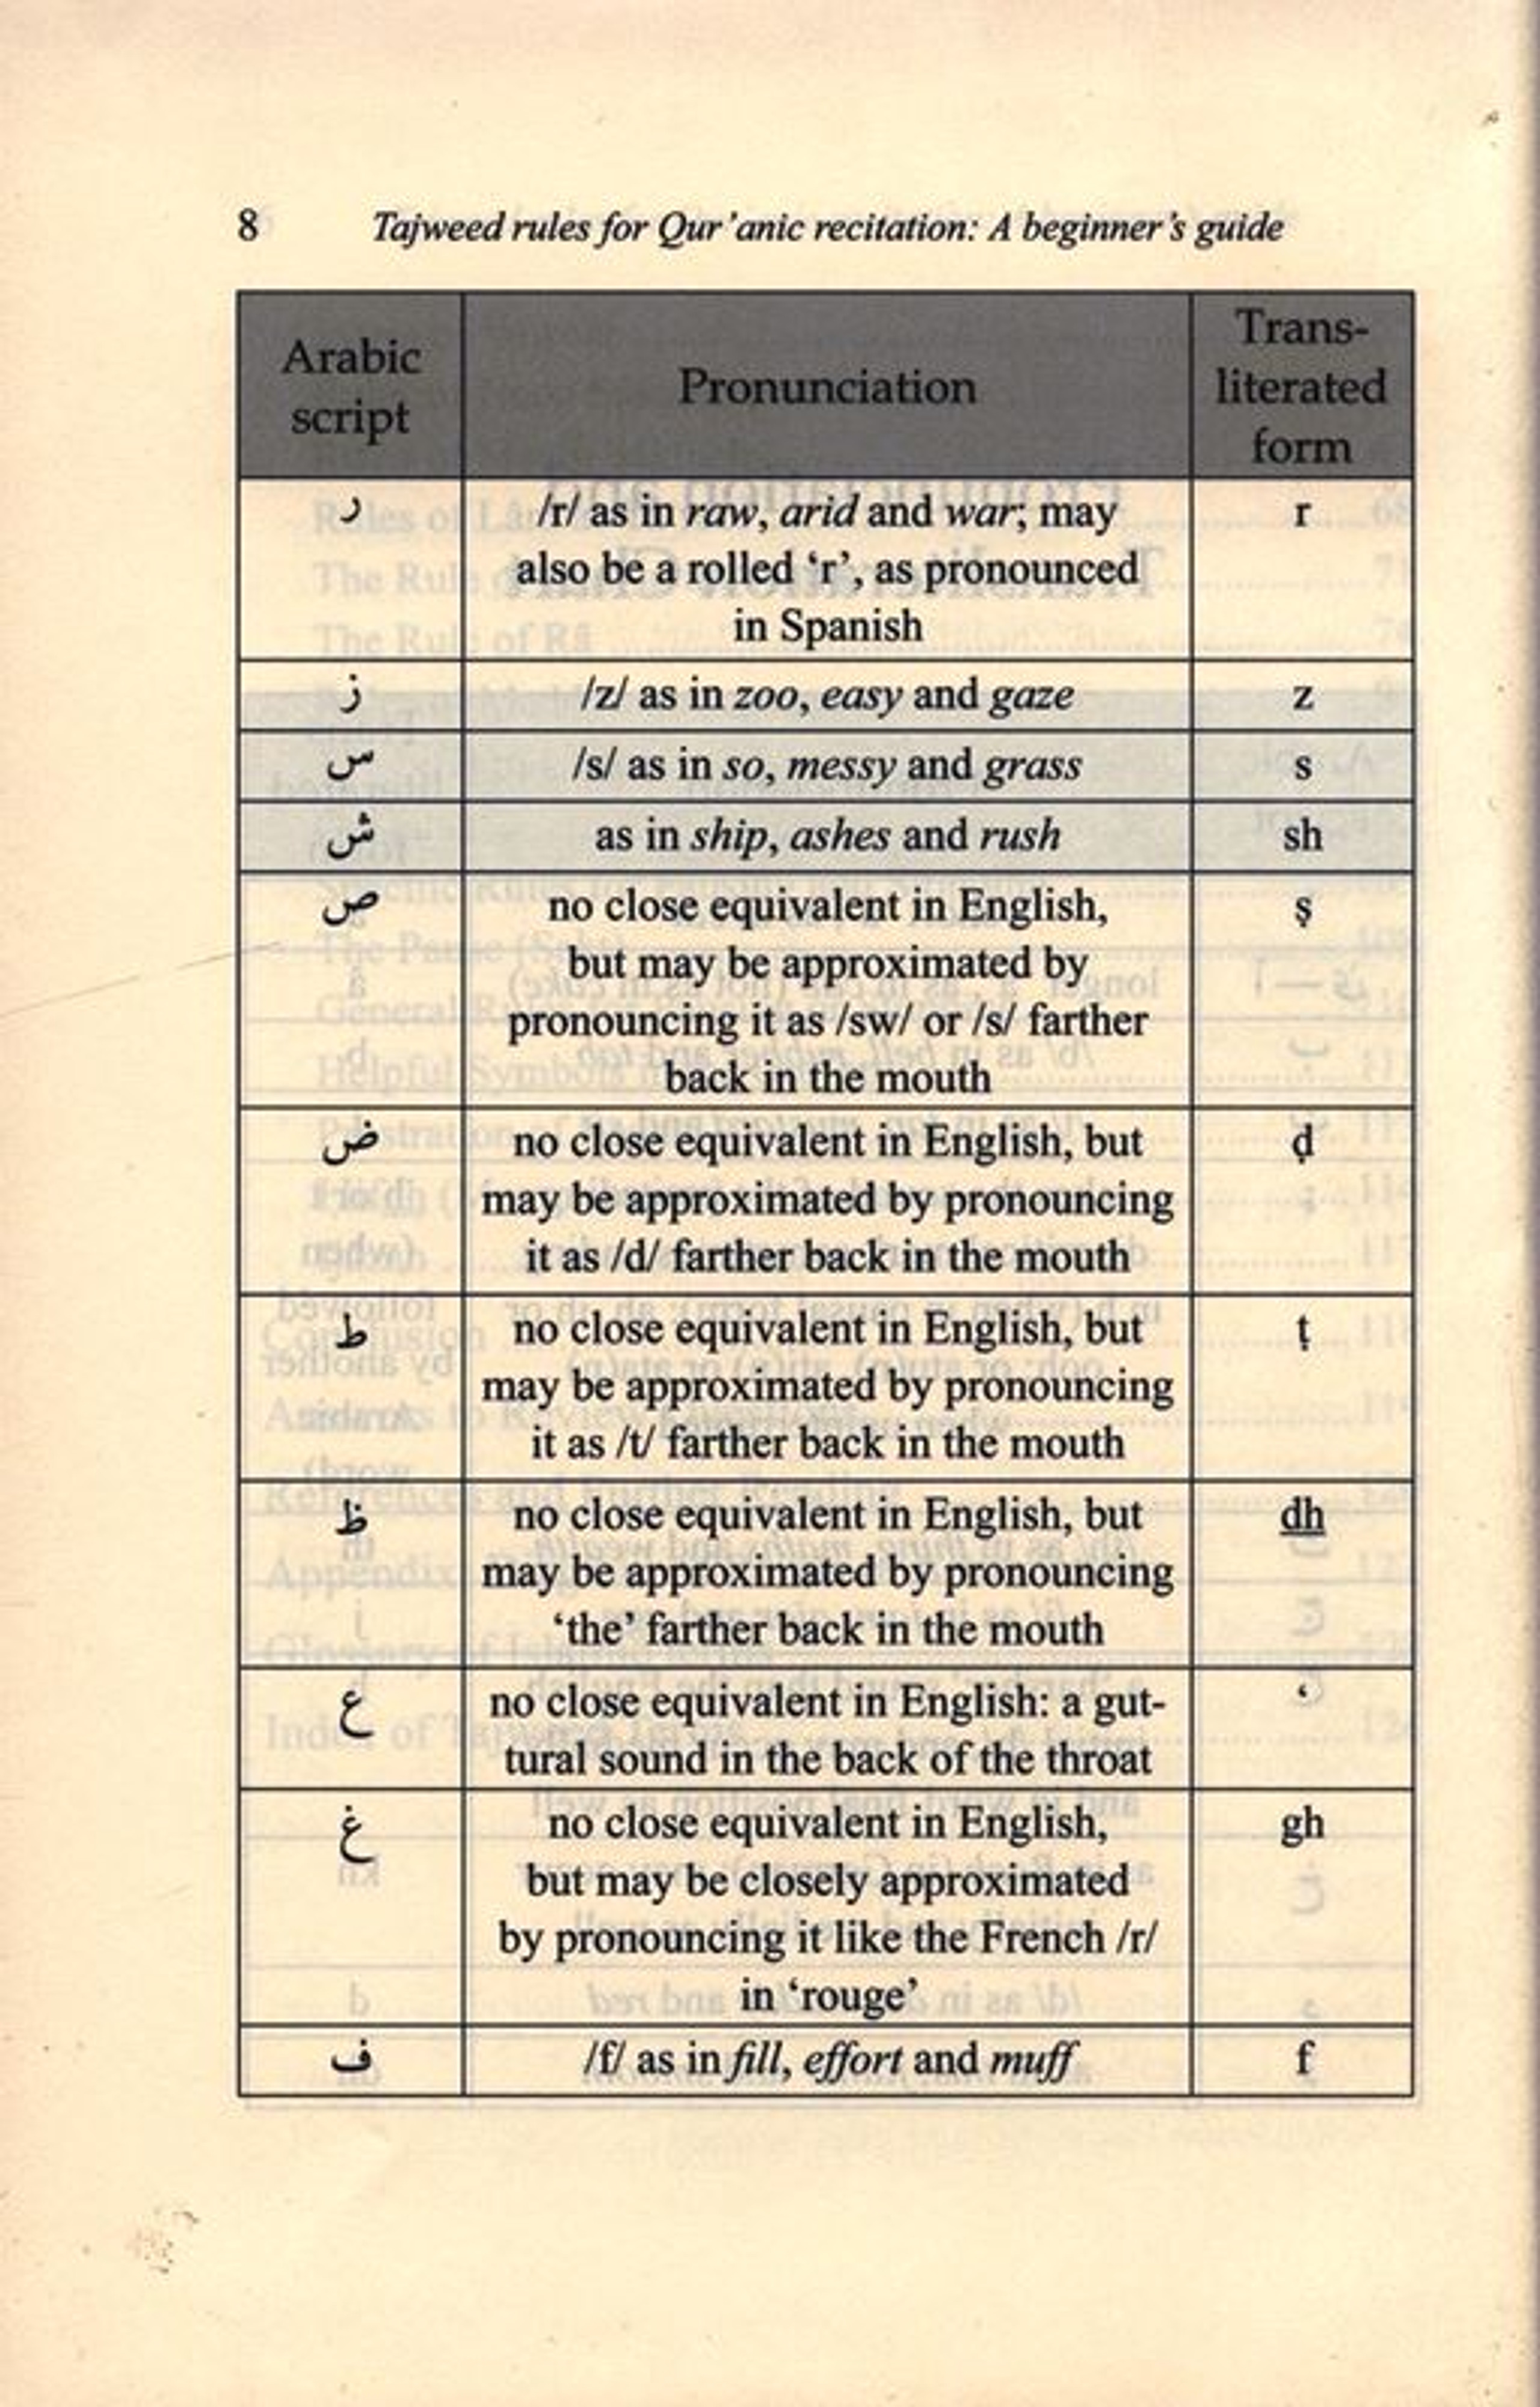 quran tajweed rules pdf